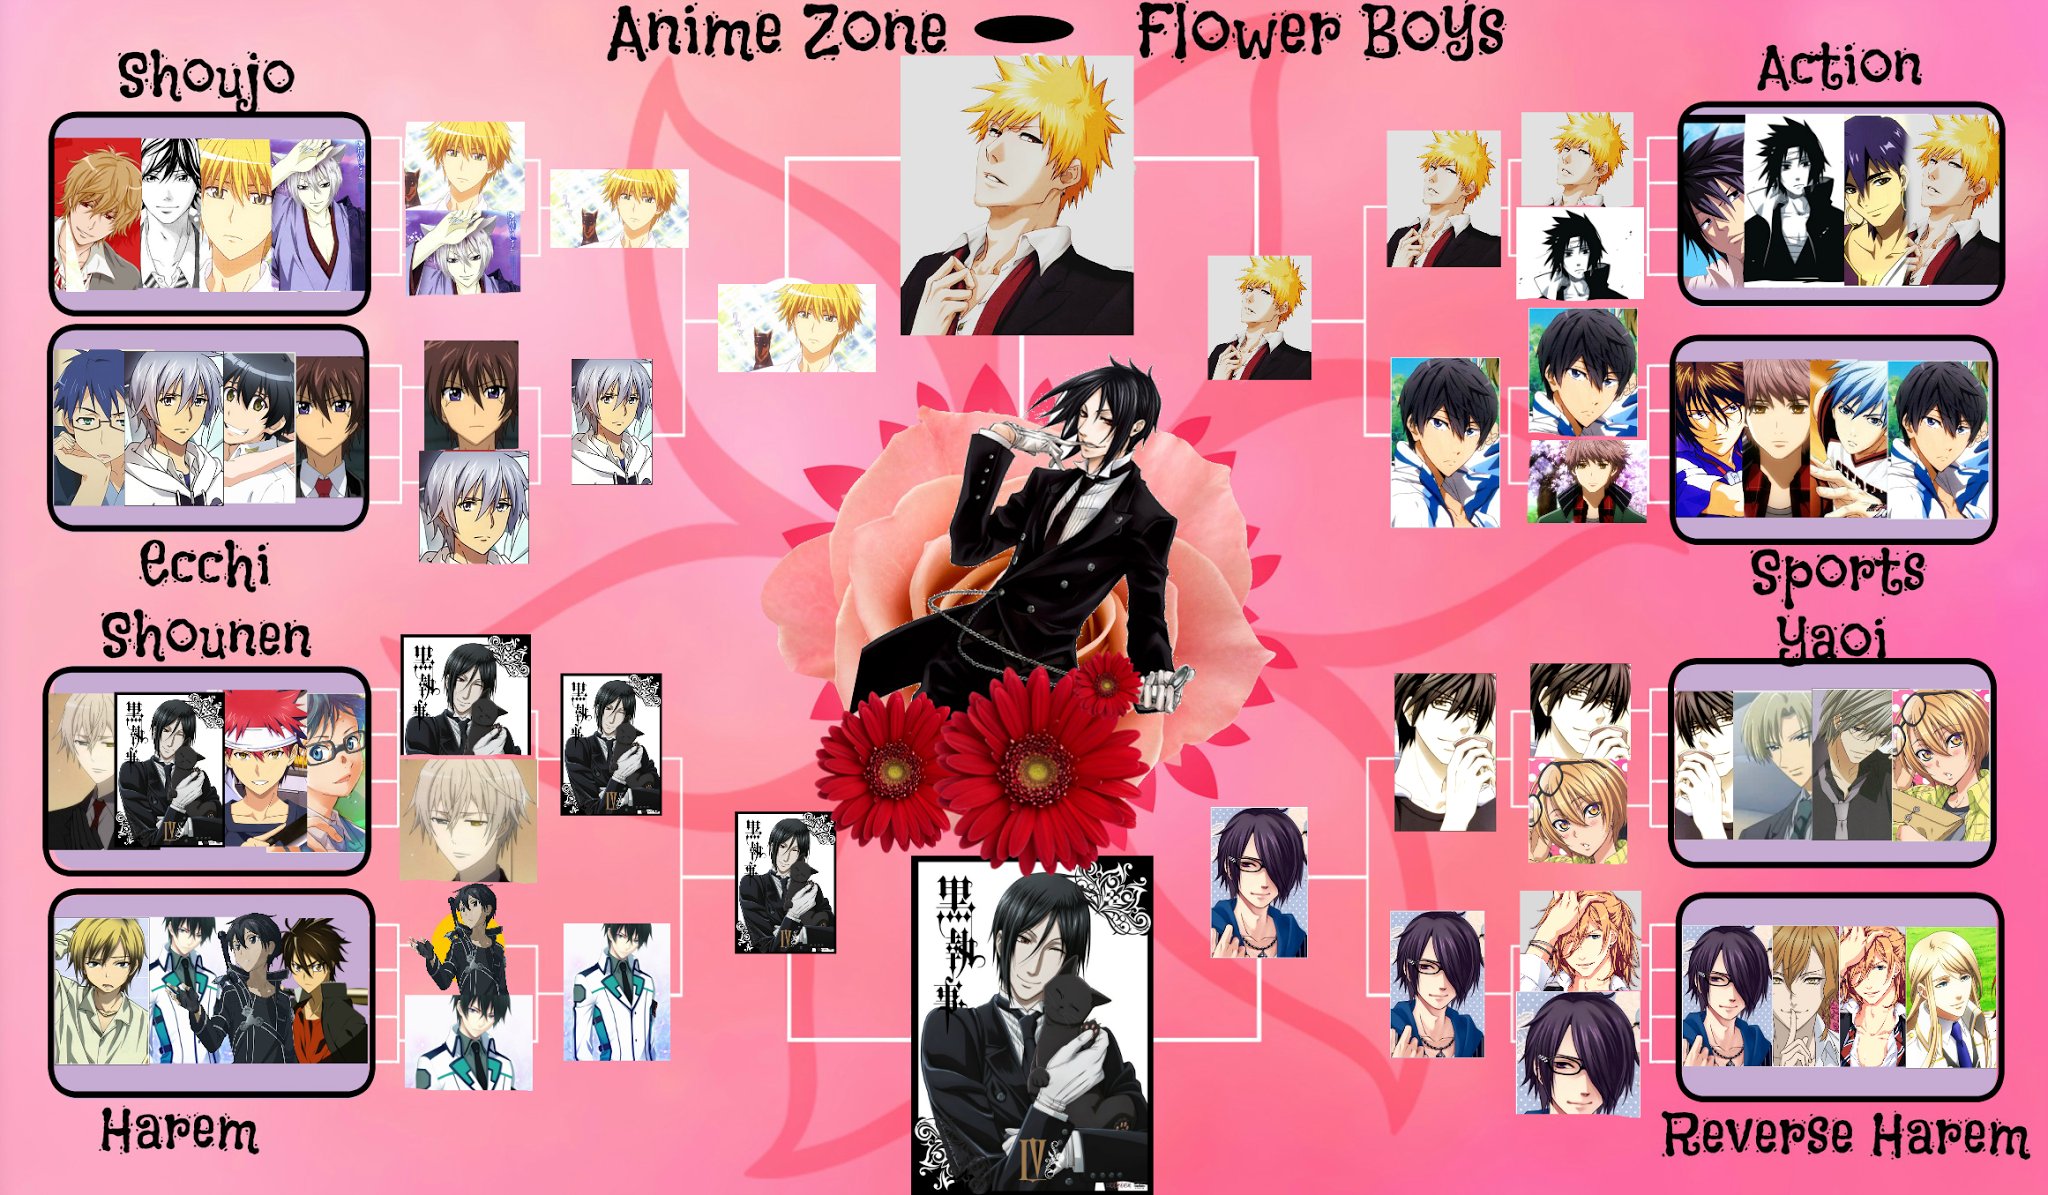 Animes' Zone